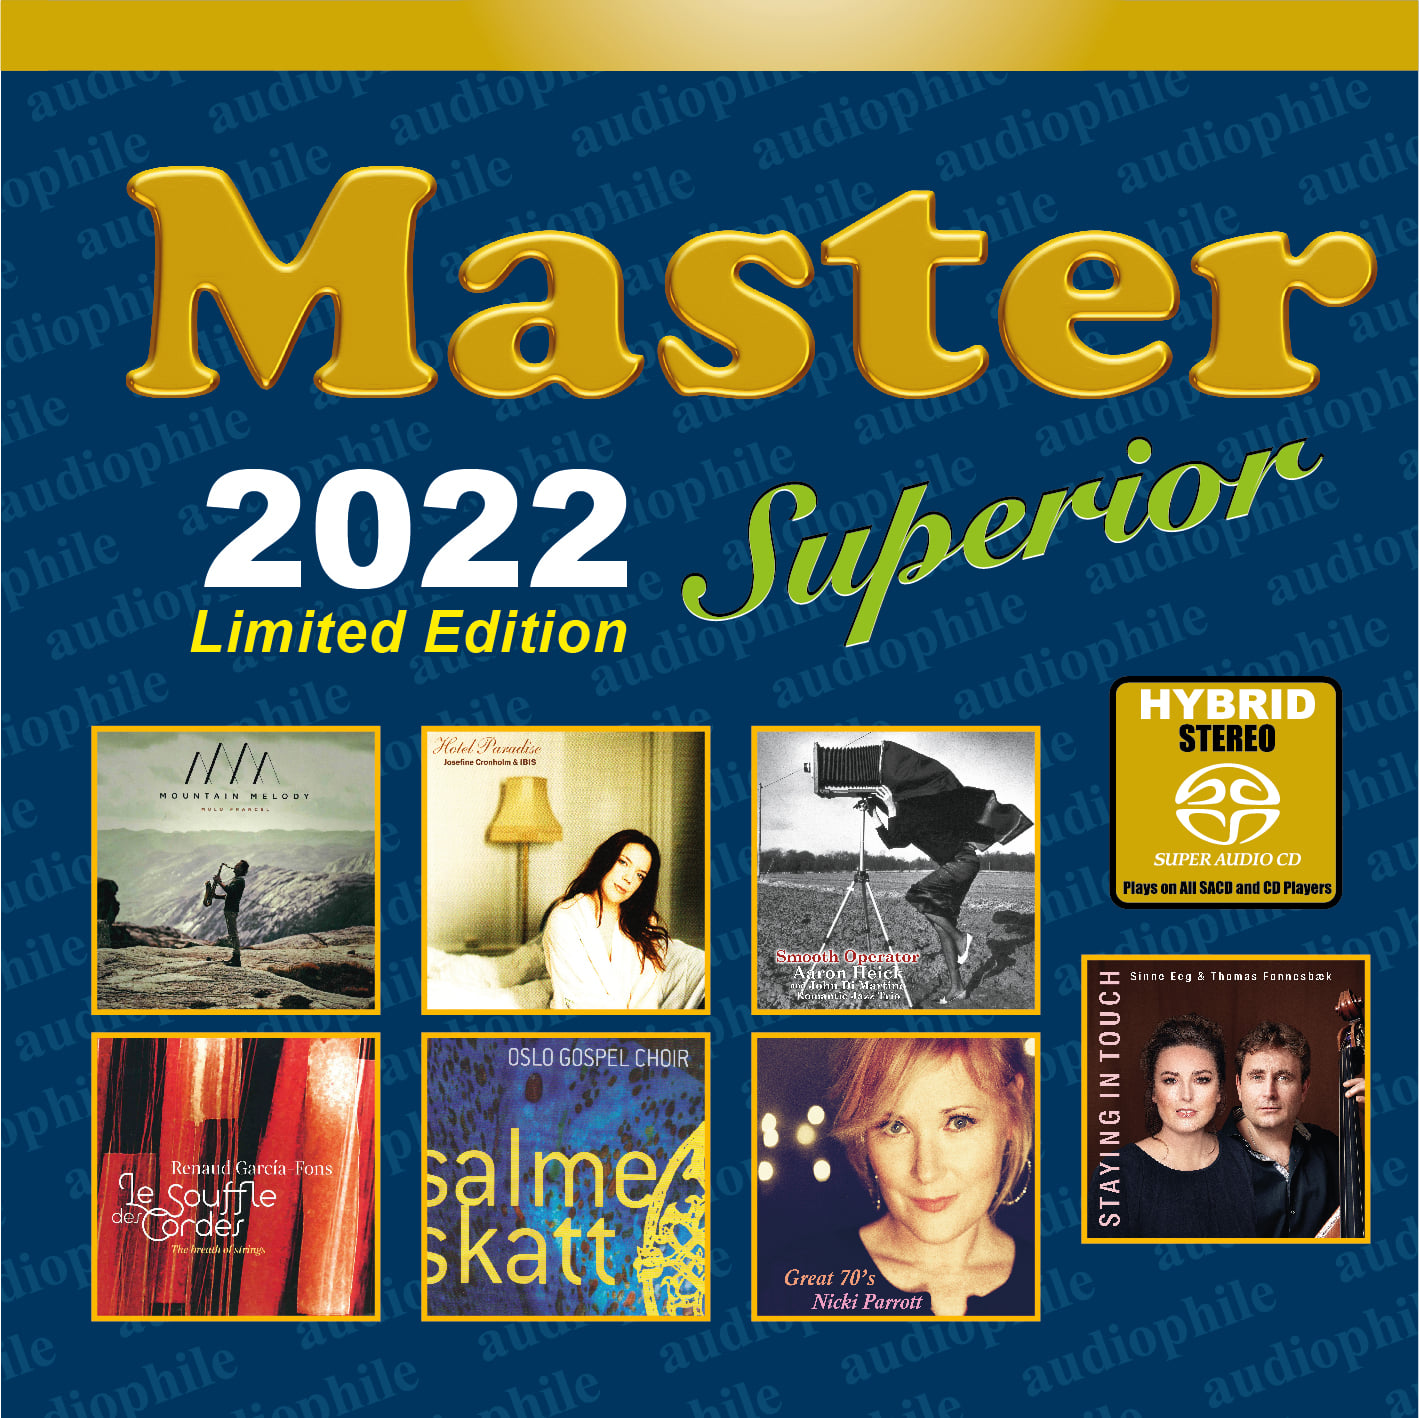 Master Superior 2022